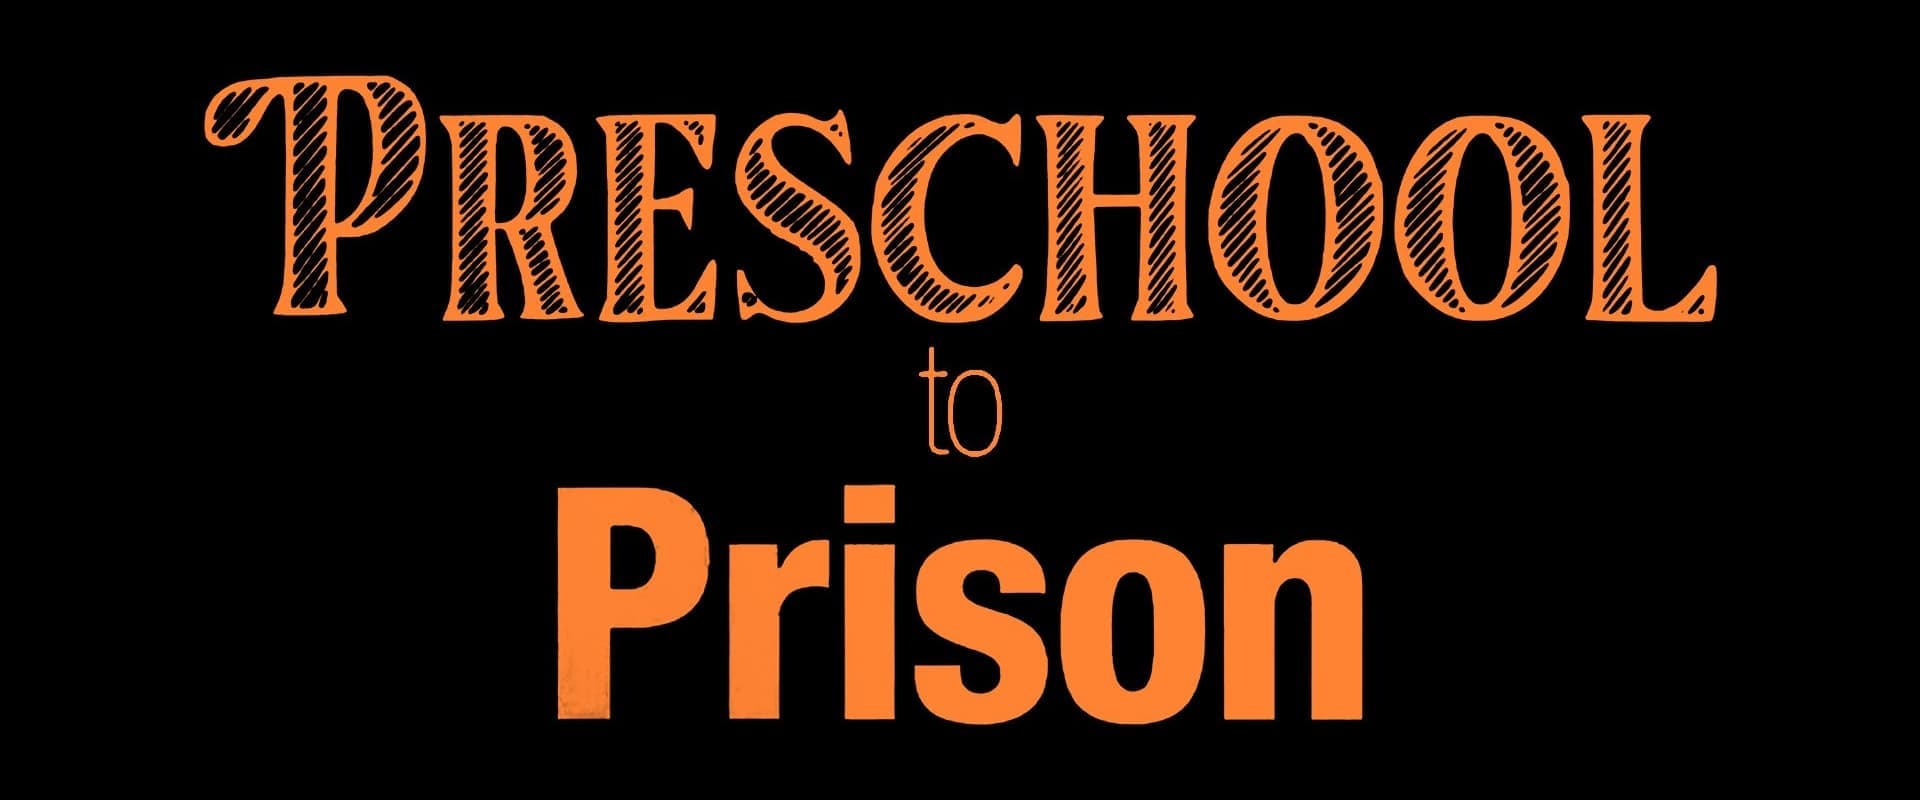 Preschool to Prison